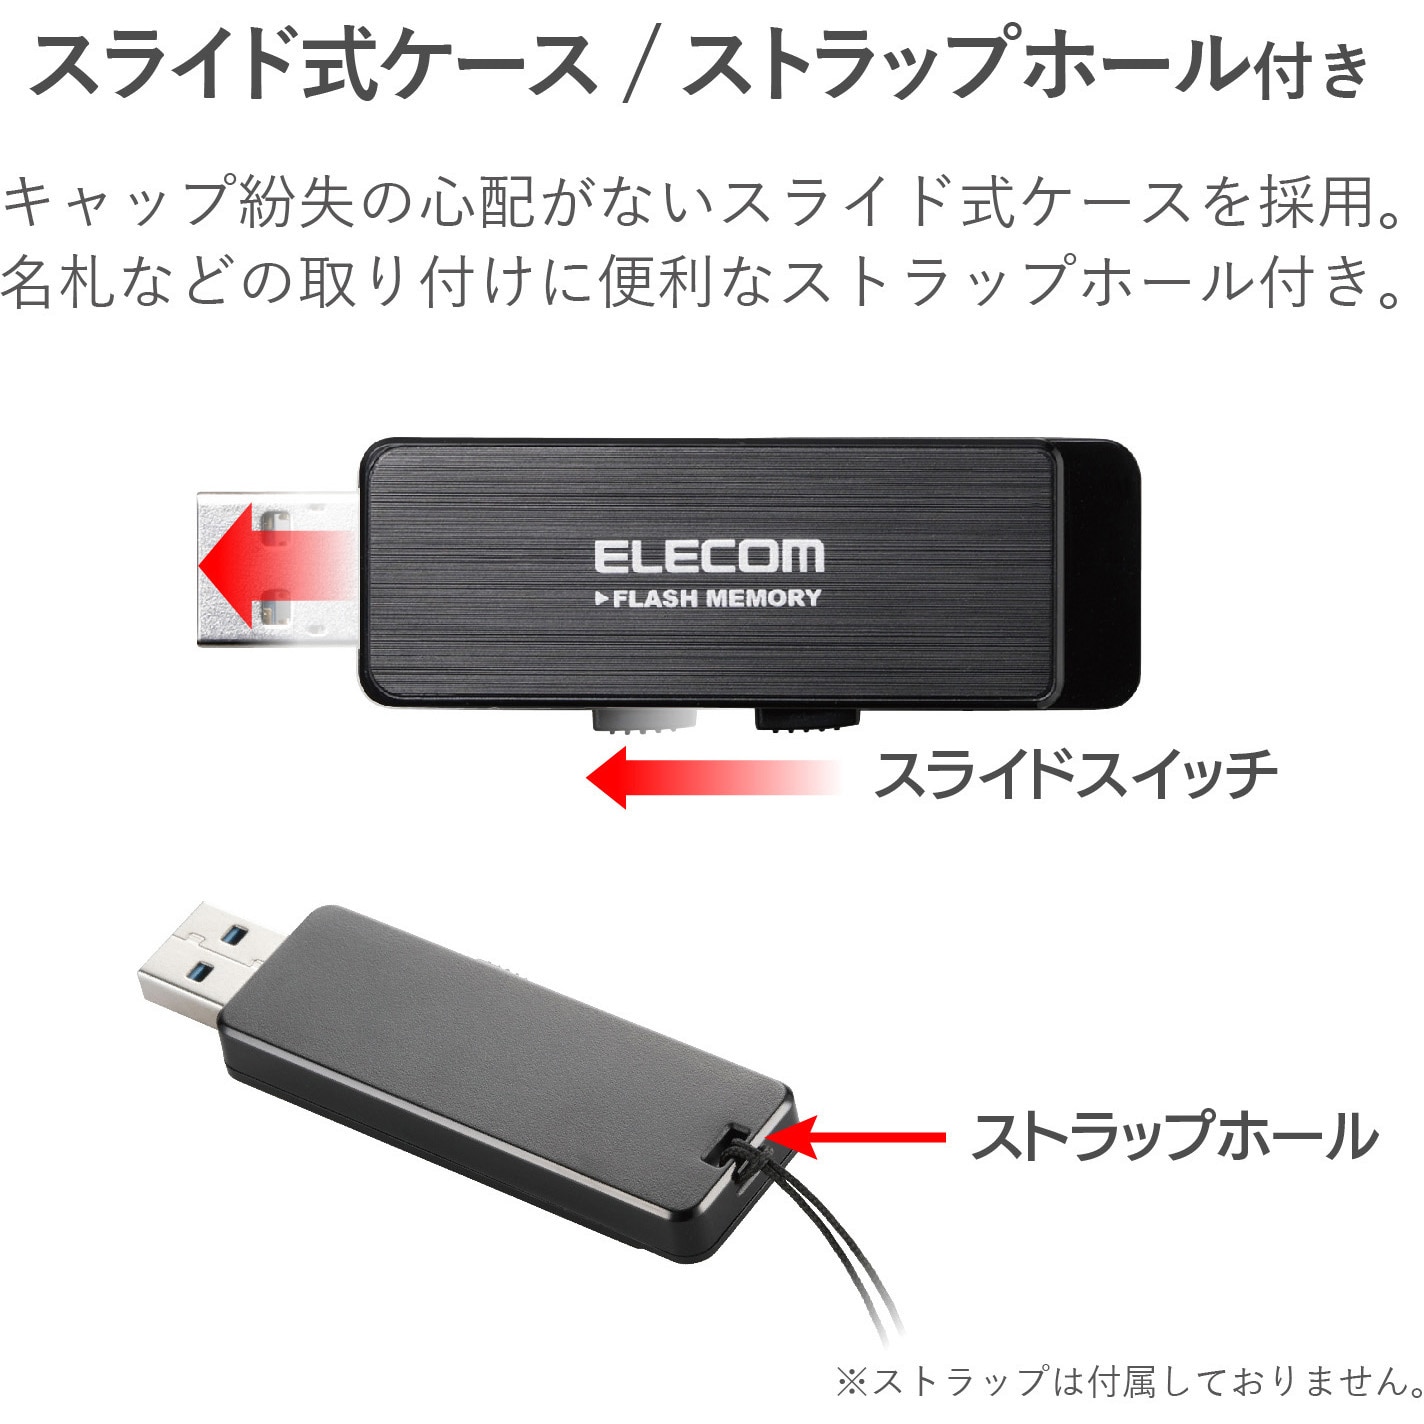 希望者のみラッピング無料 まとめ バッファロー ハードウェア暗号化機能USB3.0 セキュリティーUSBメモリー 16GB RUF3-HS16G 1個  21